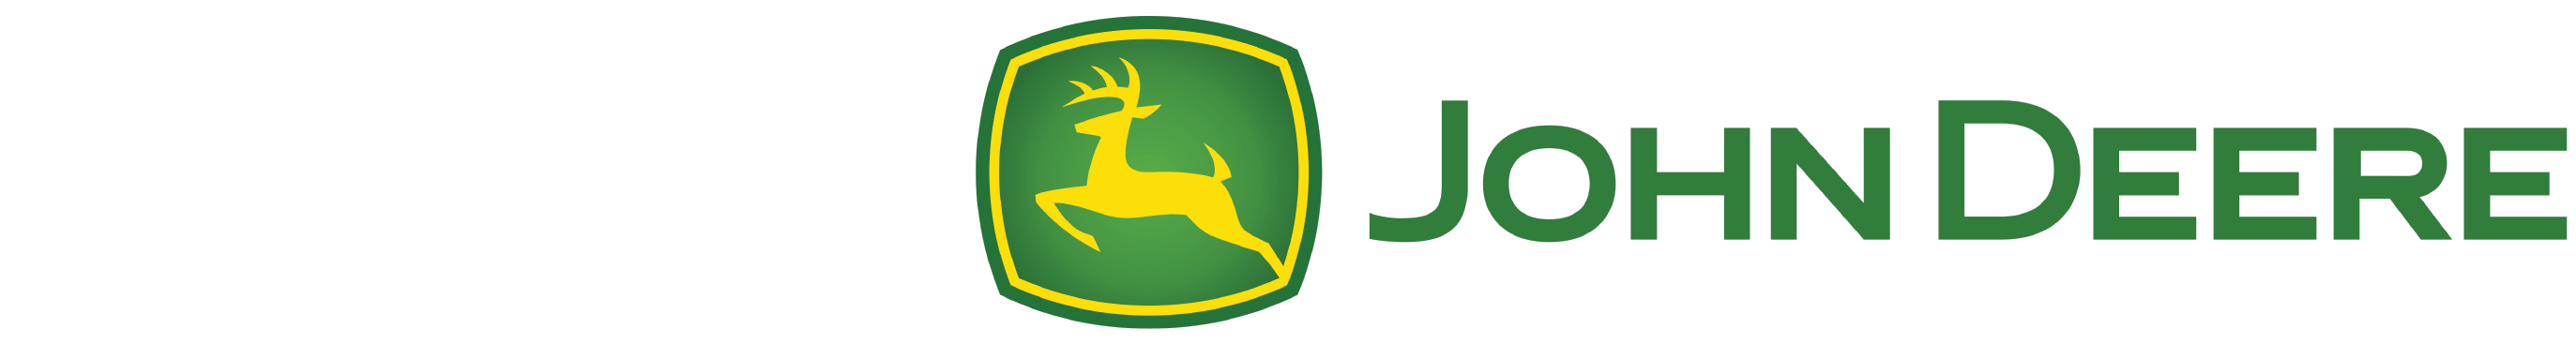 John Deere Logo - John Deere PNG Transparent John Deere.PNG Images. | PlusPNG